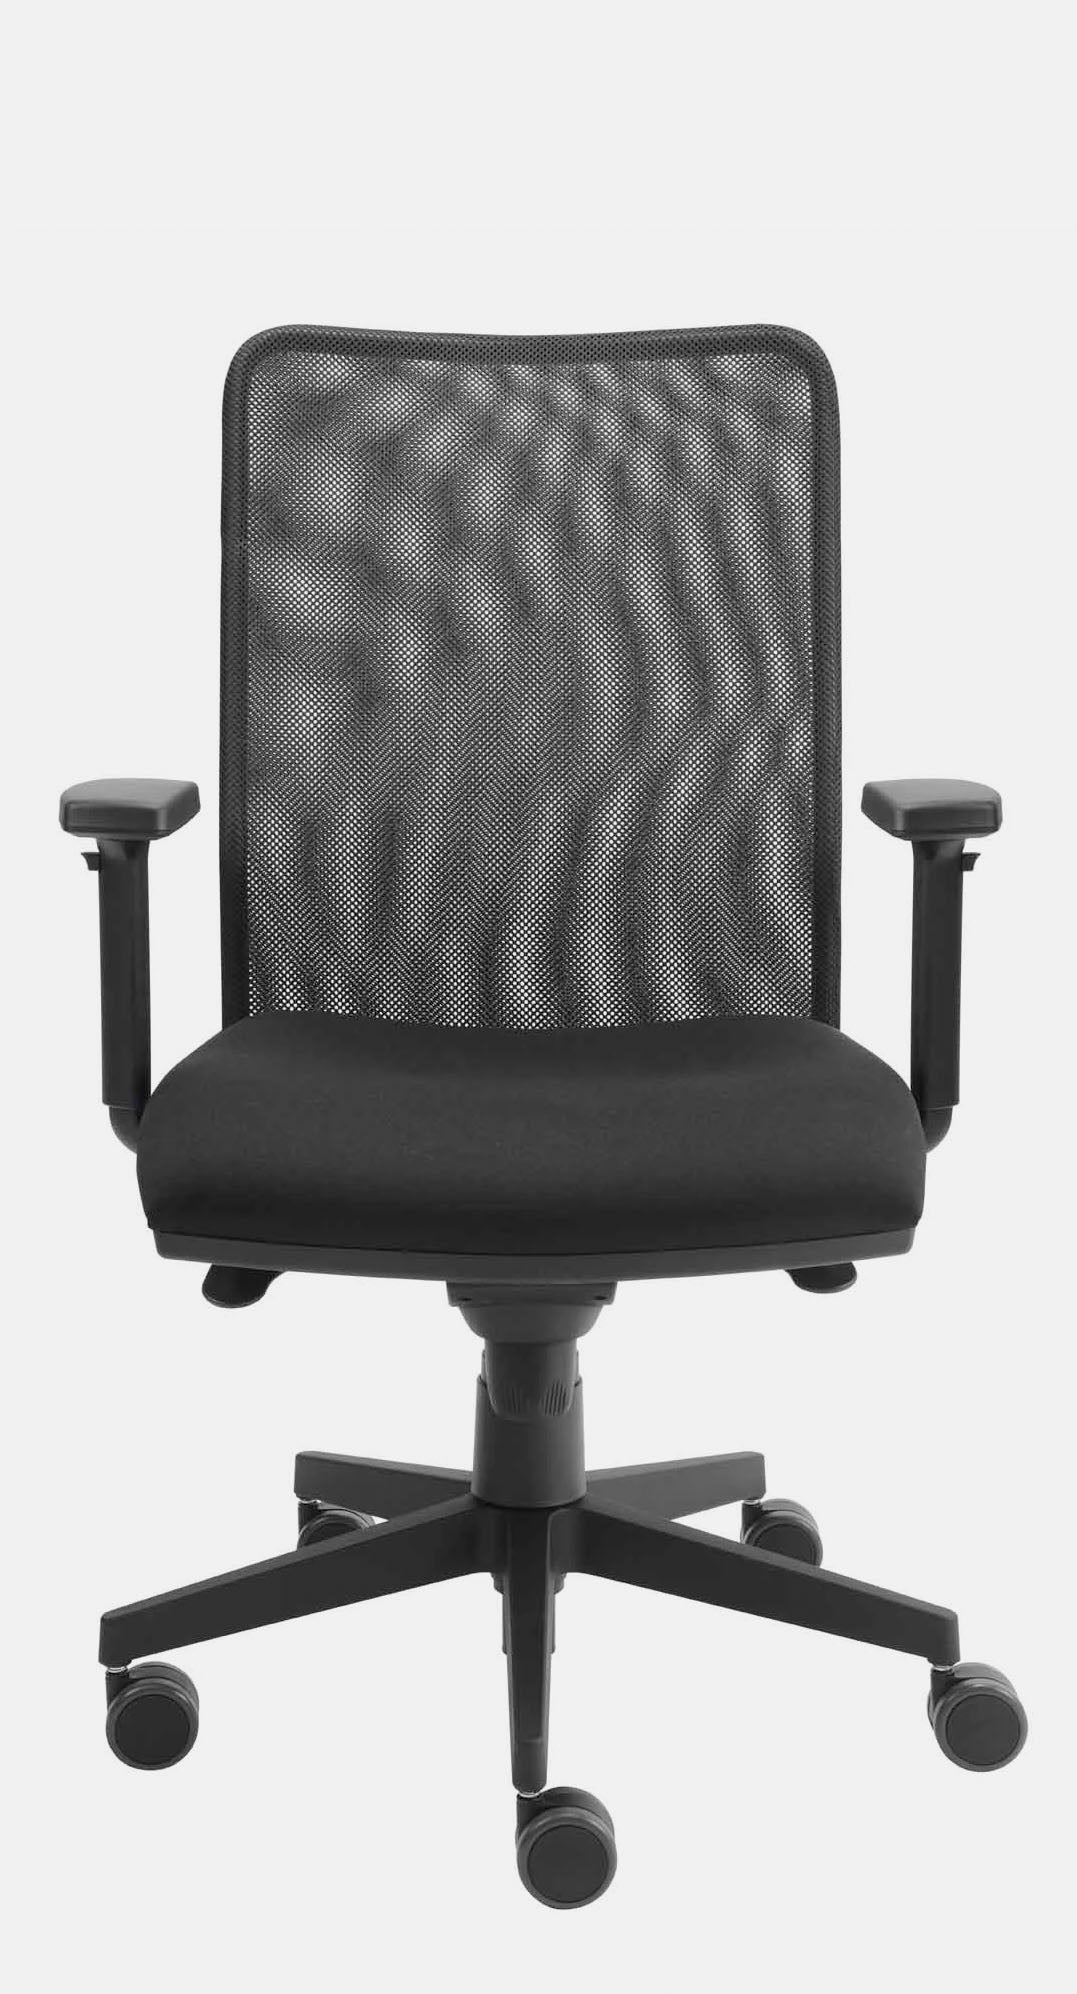 Schwarzer Bürostuhl mit Netz-Rückenlehne und gepolsterter Sitzfläche inklusive Armlehnen